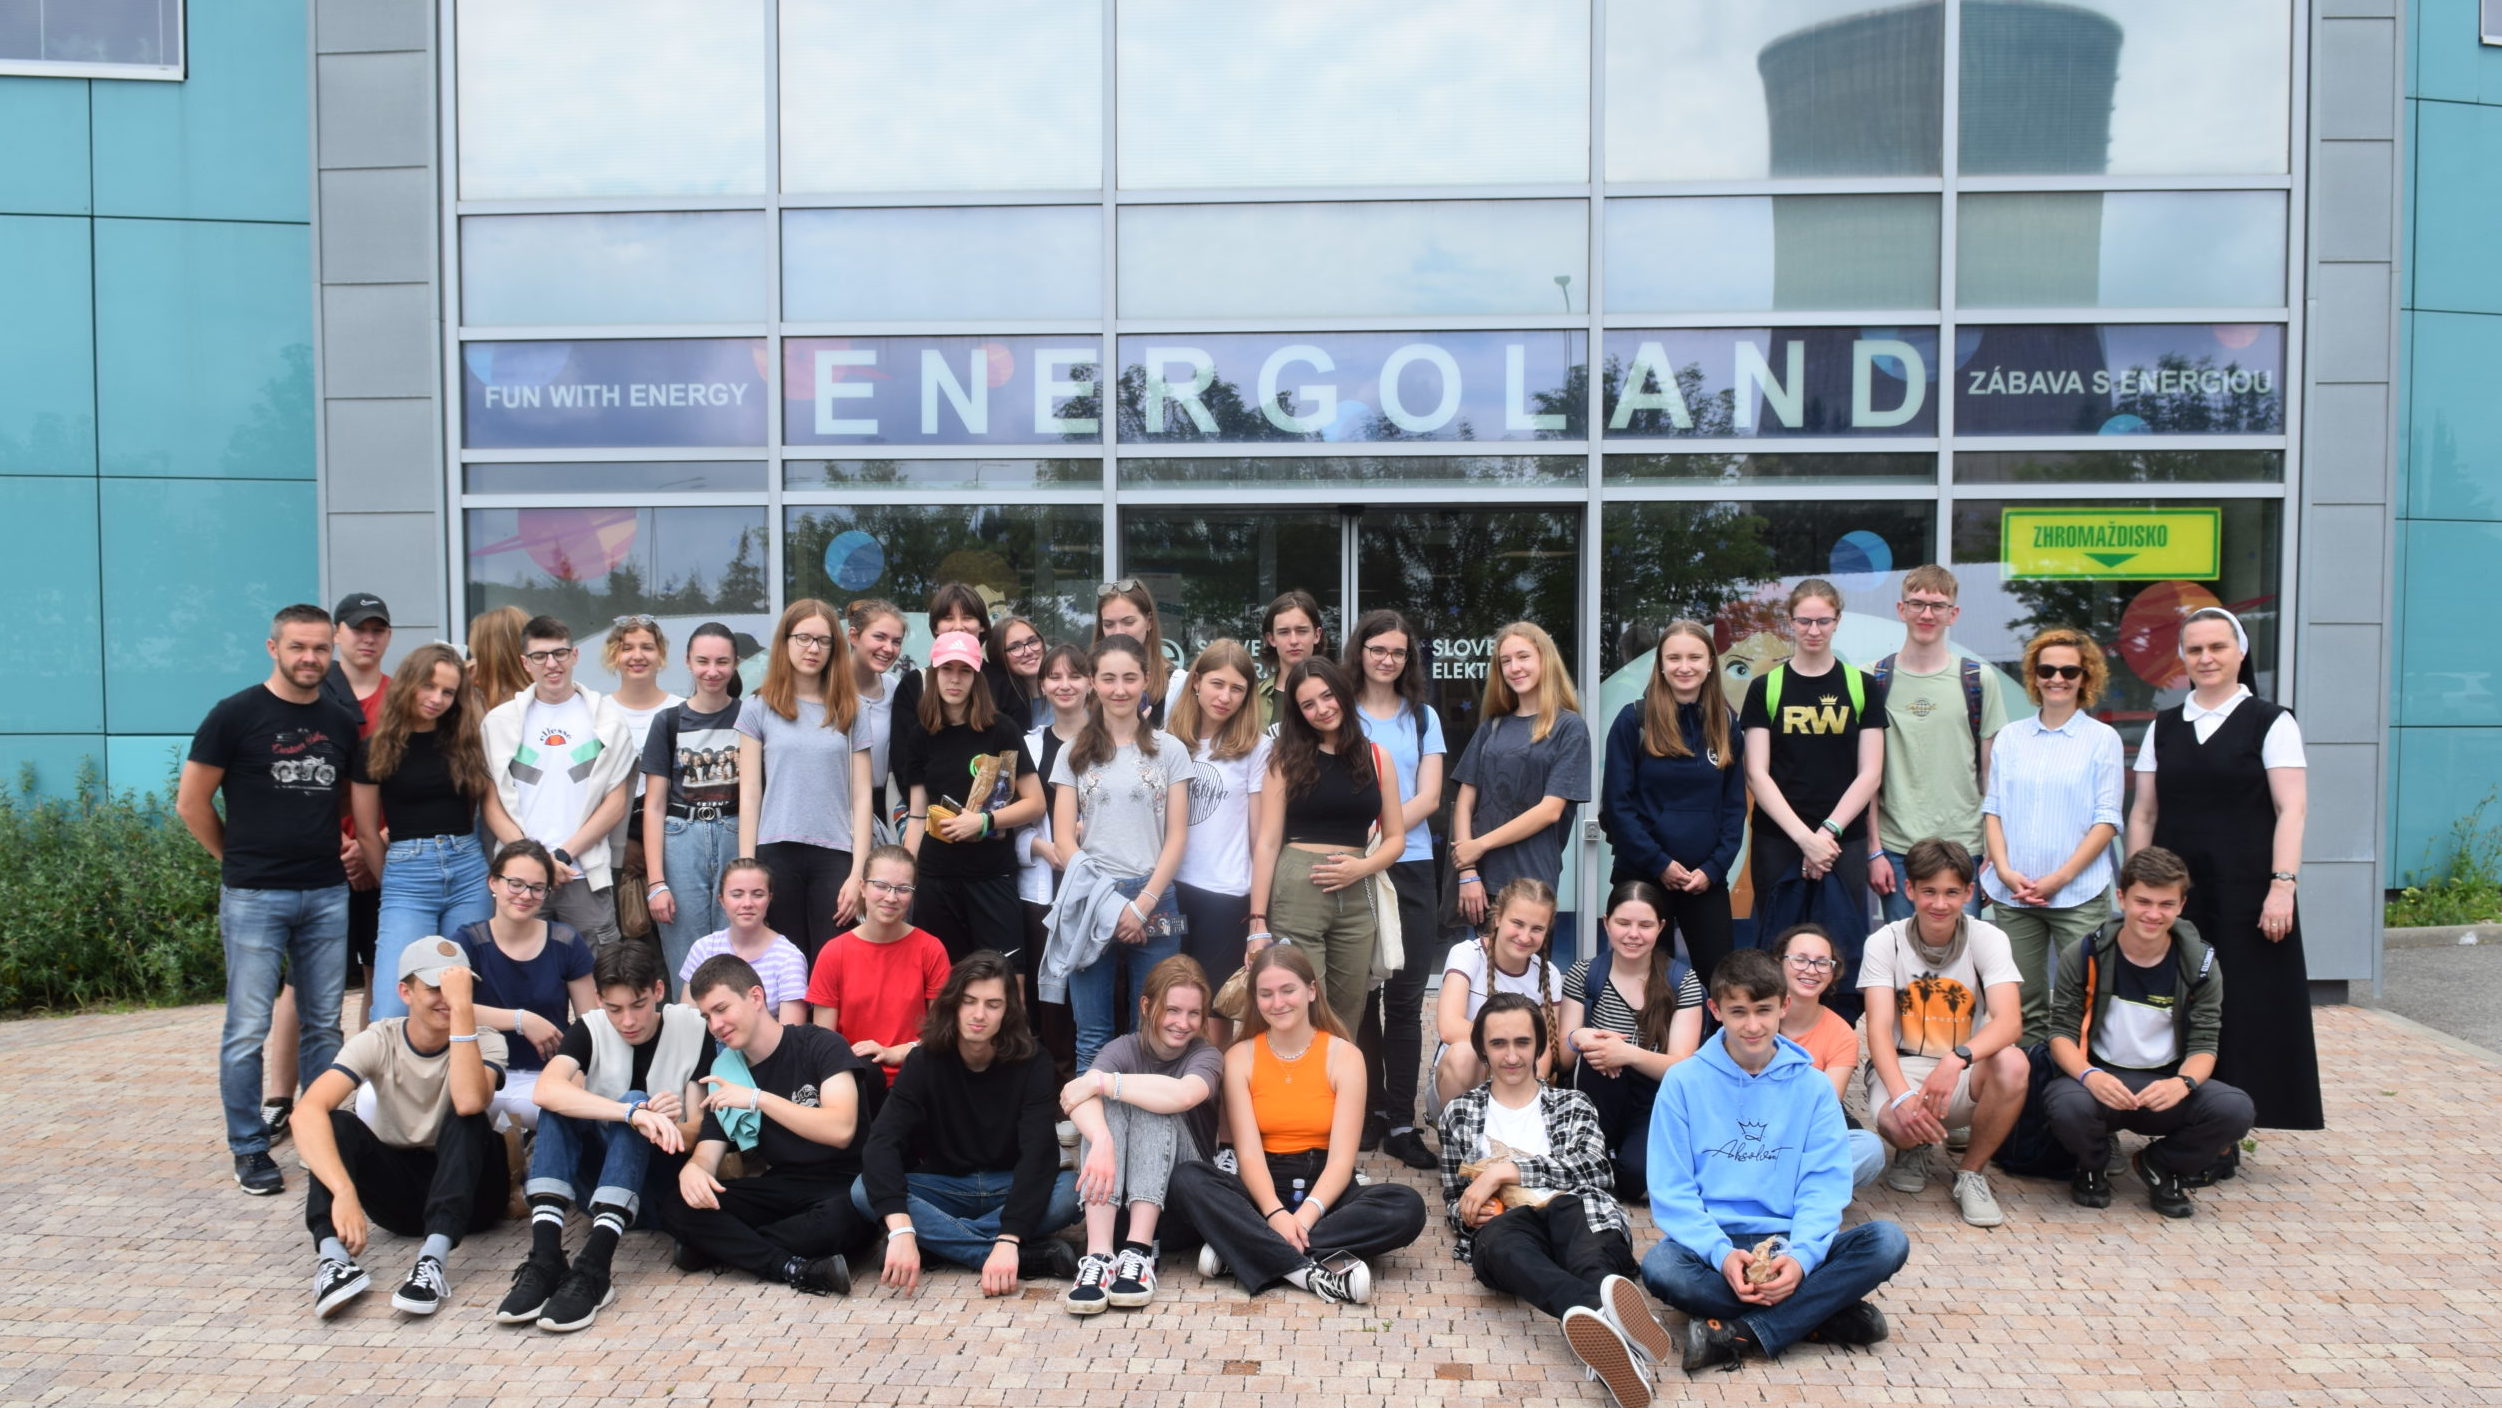 Výhercovia Energocraftu vyhrali výlet do Energolandu pre celú triedu.